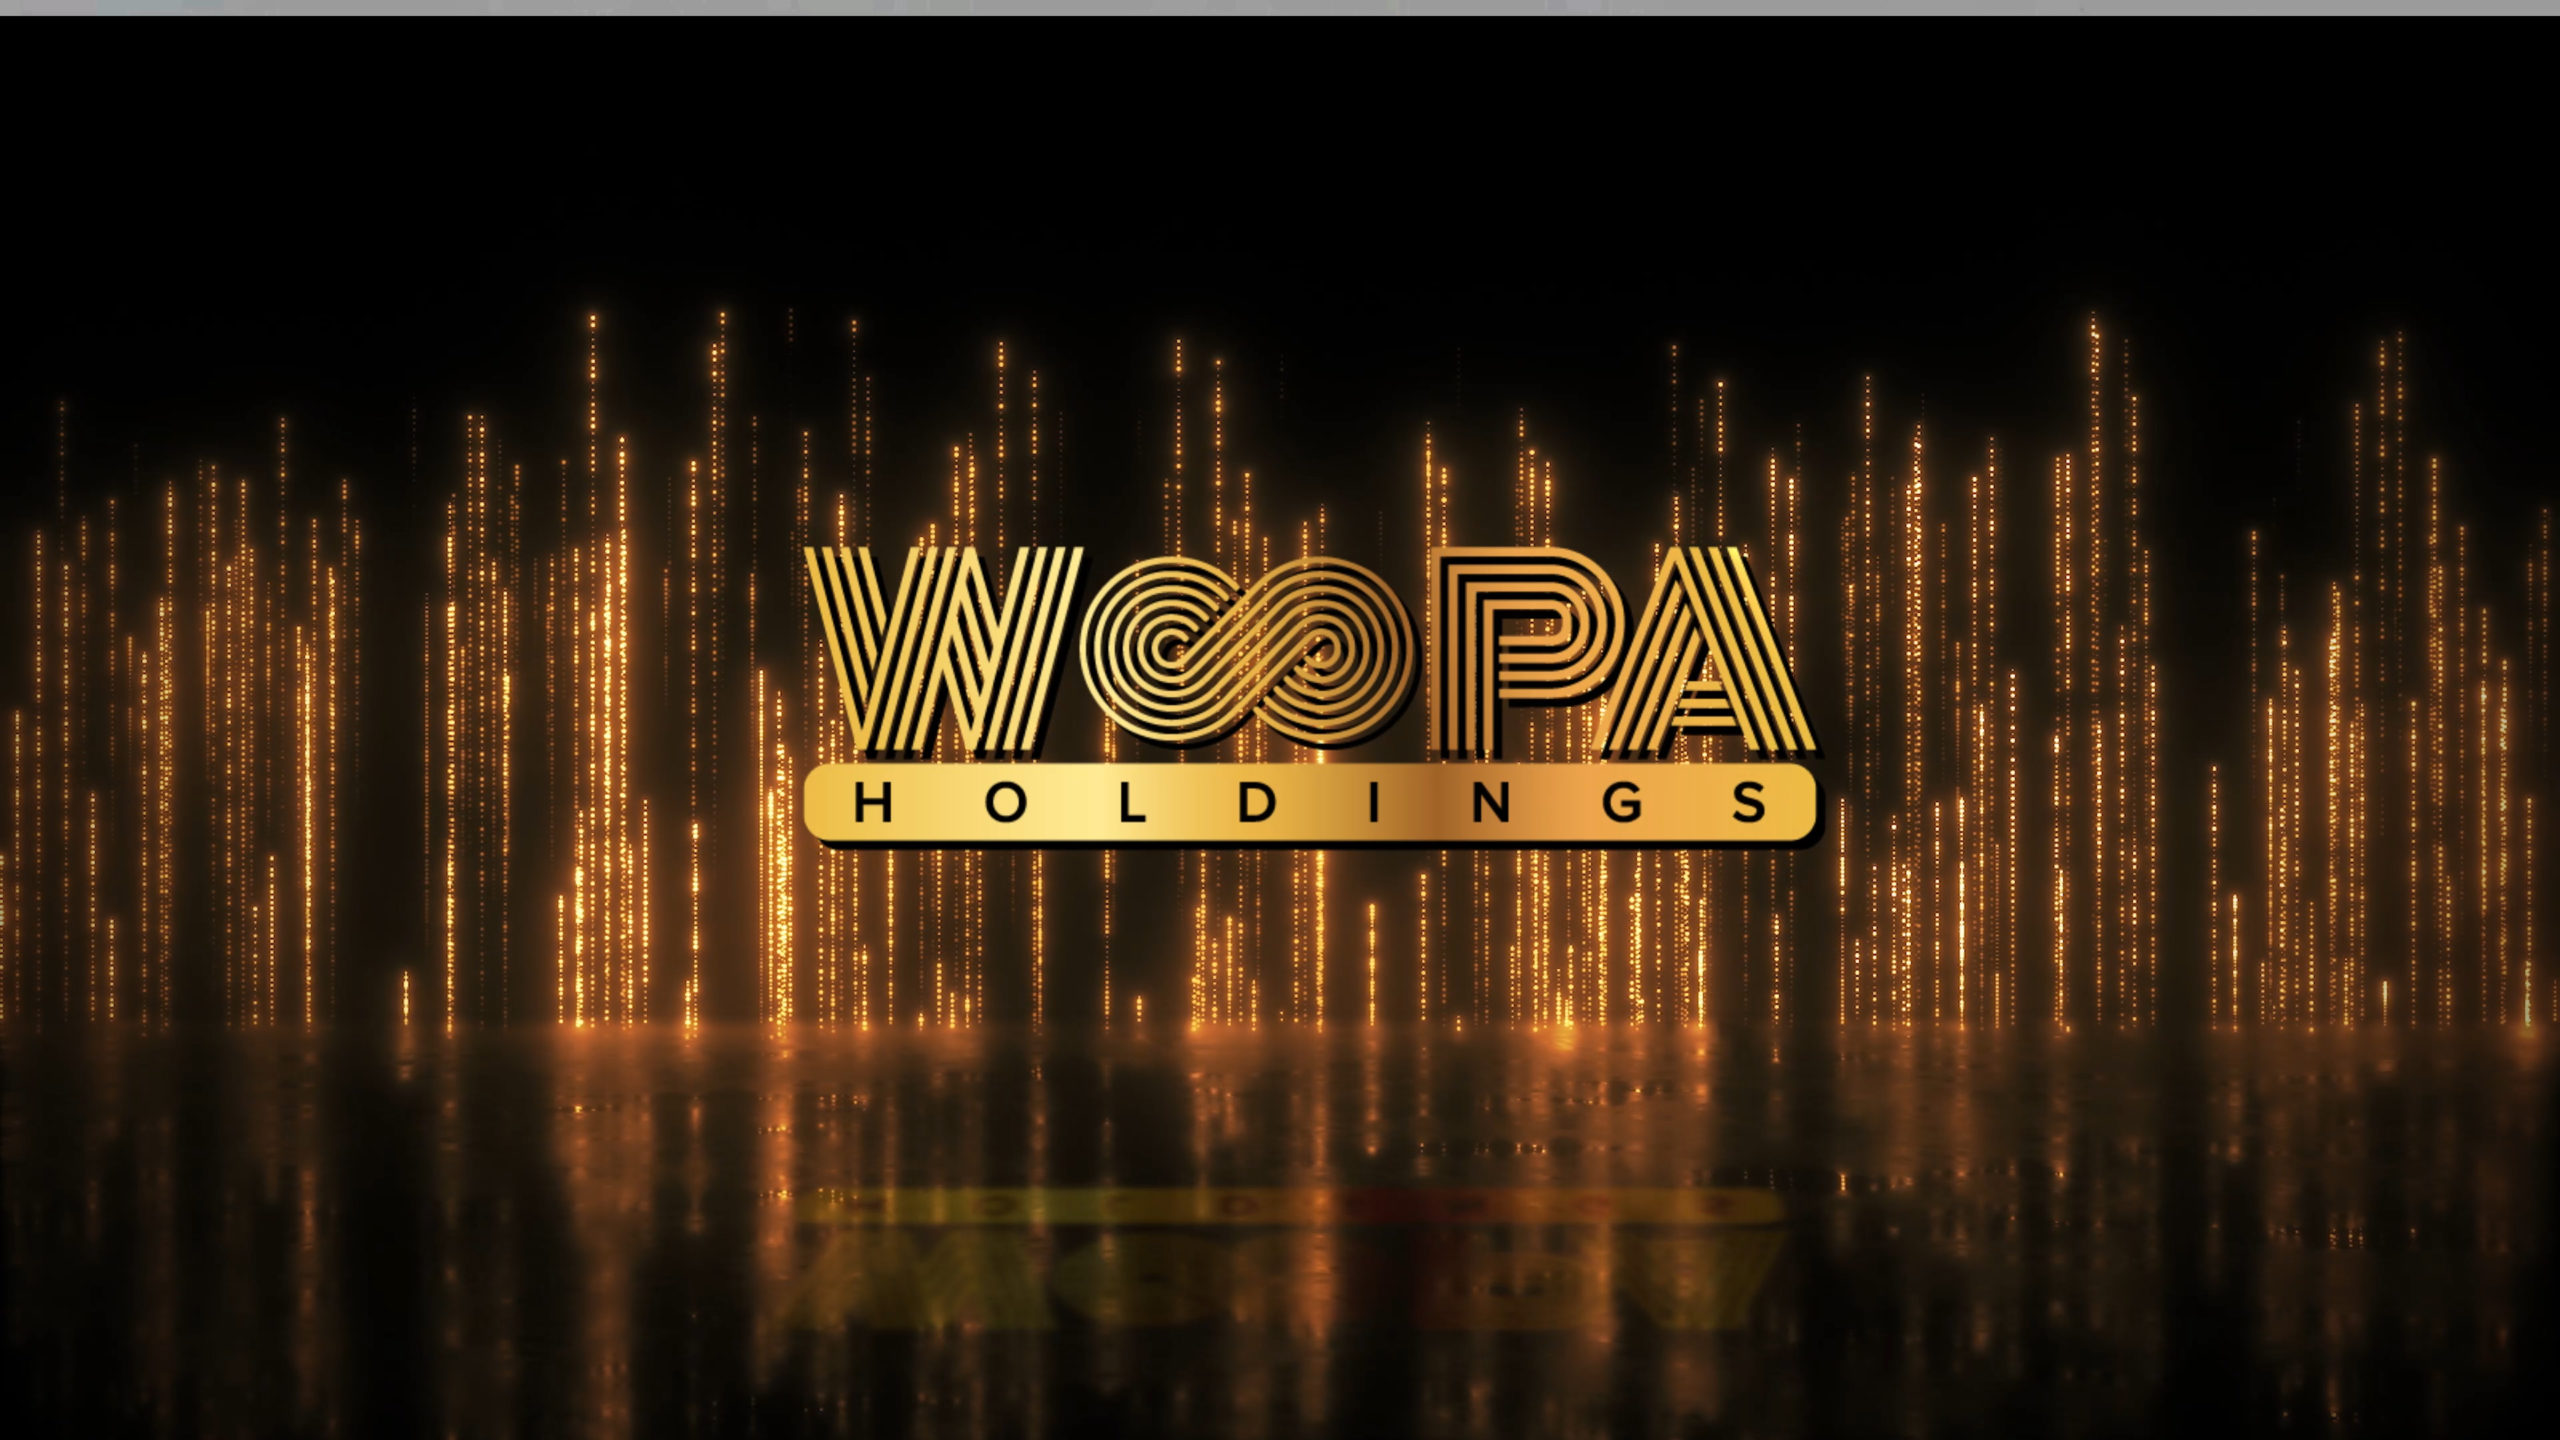 וופה הולדינגס woopa holdings